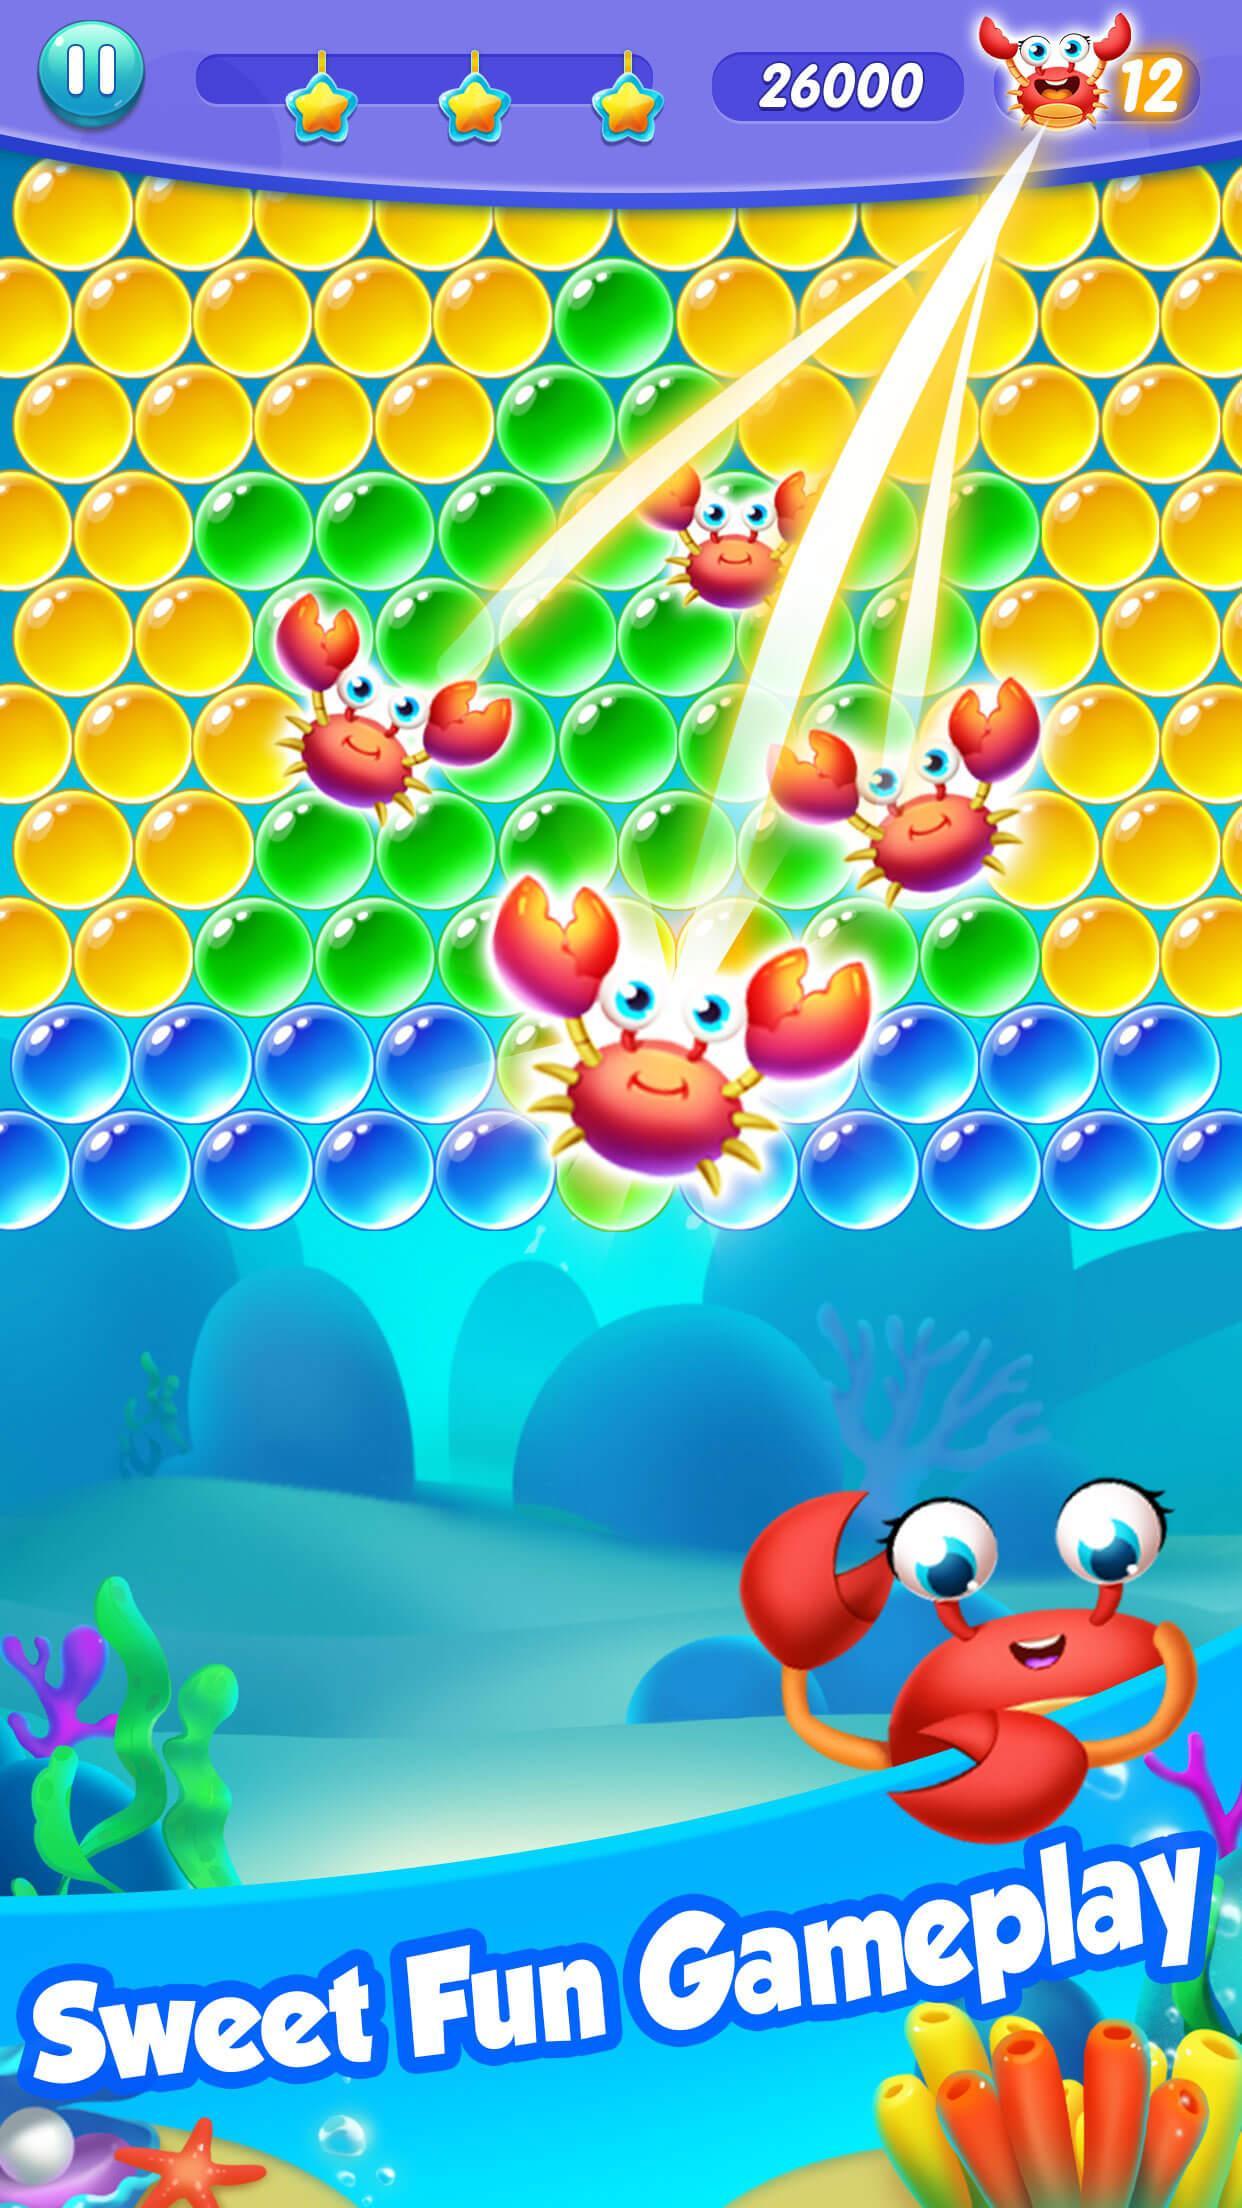 Screenshot 1 of Bắn bong bóng: Đại dương Pop 1.0.1